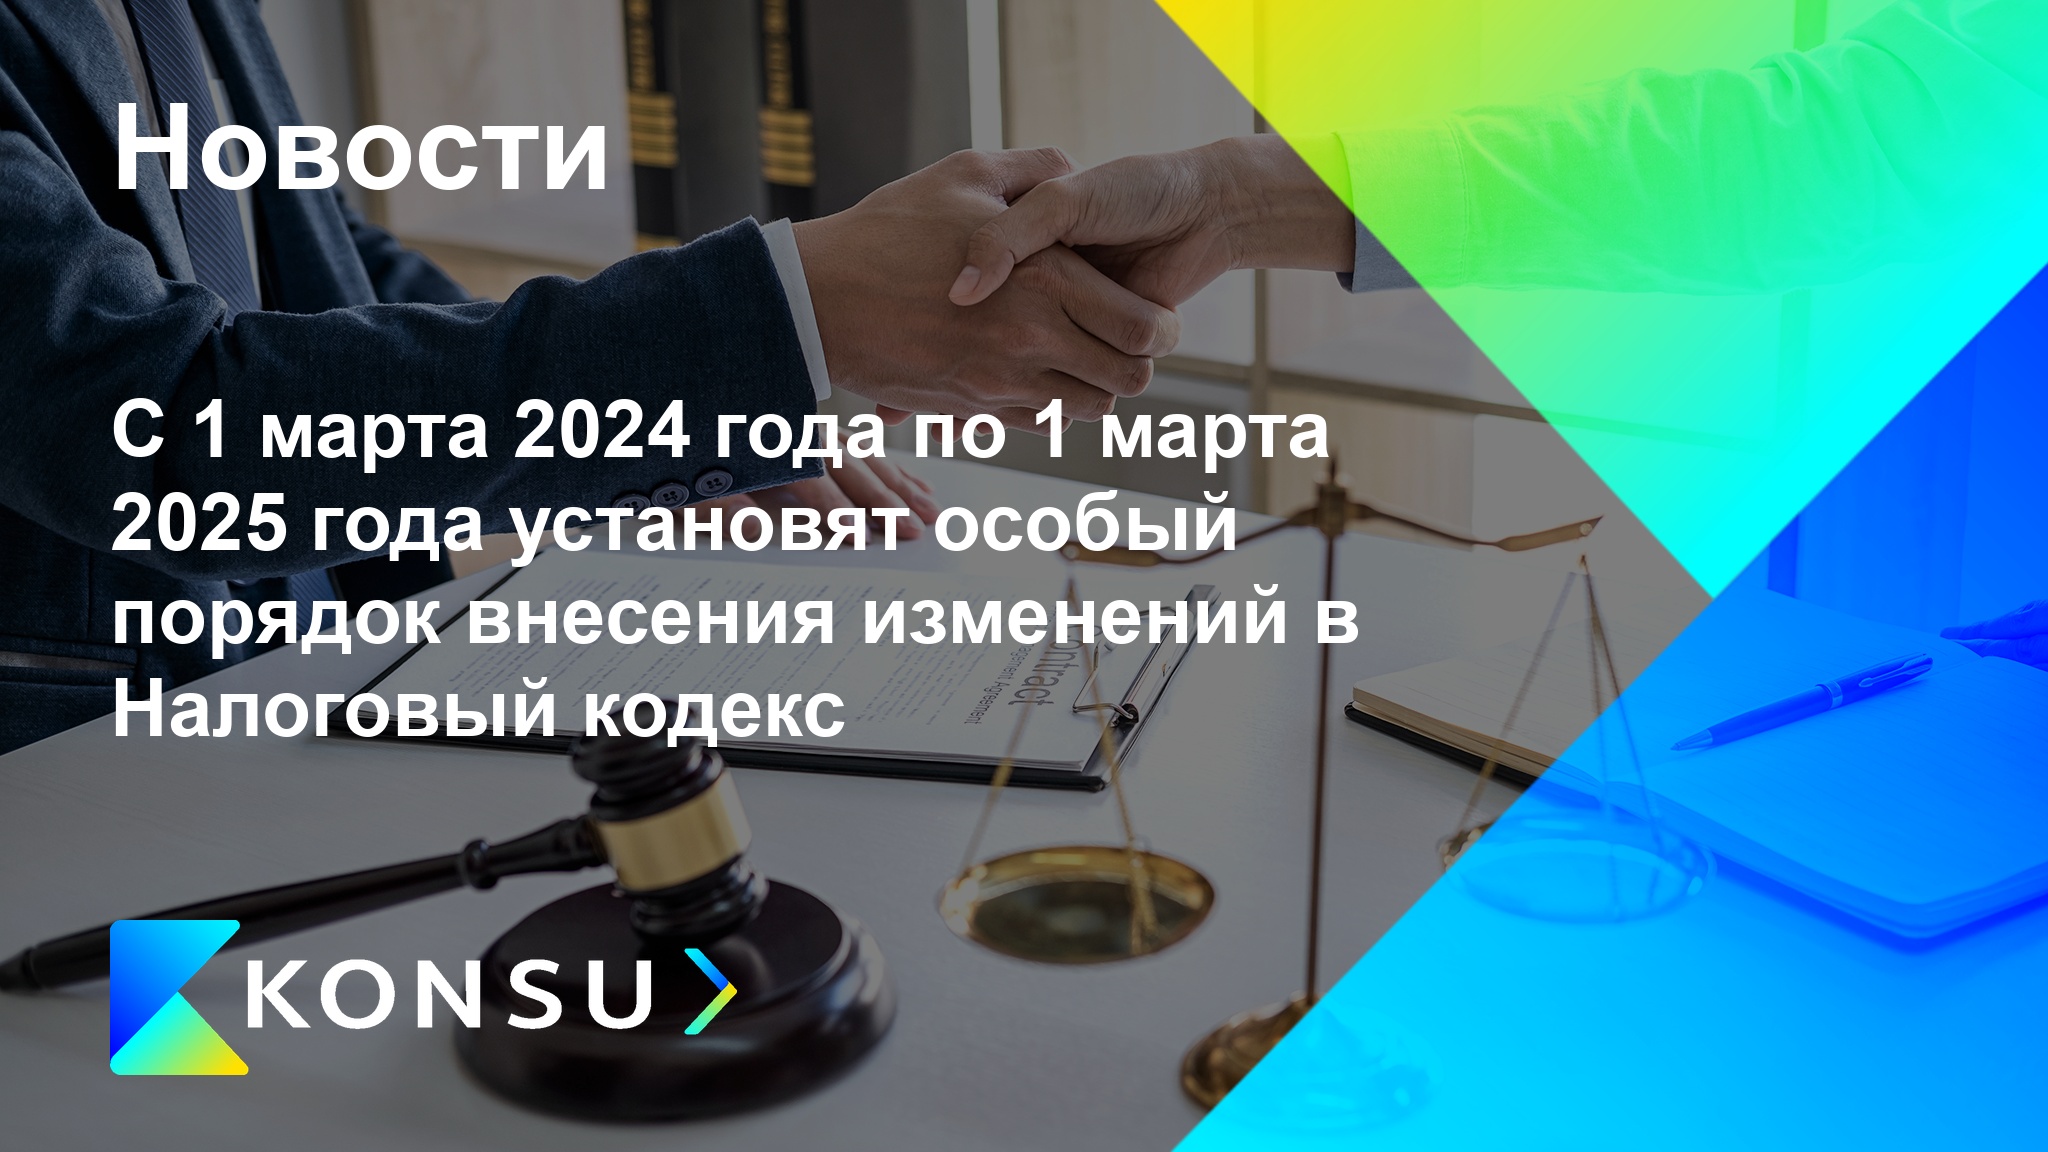 Marta 2024 goda marta 2025 goda ustanovjat osobyj ru konsu outso